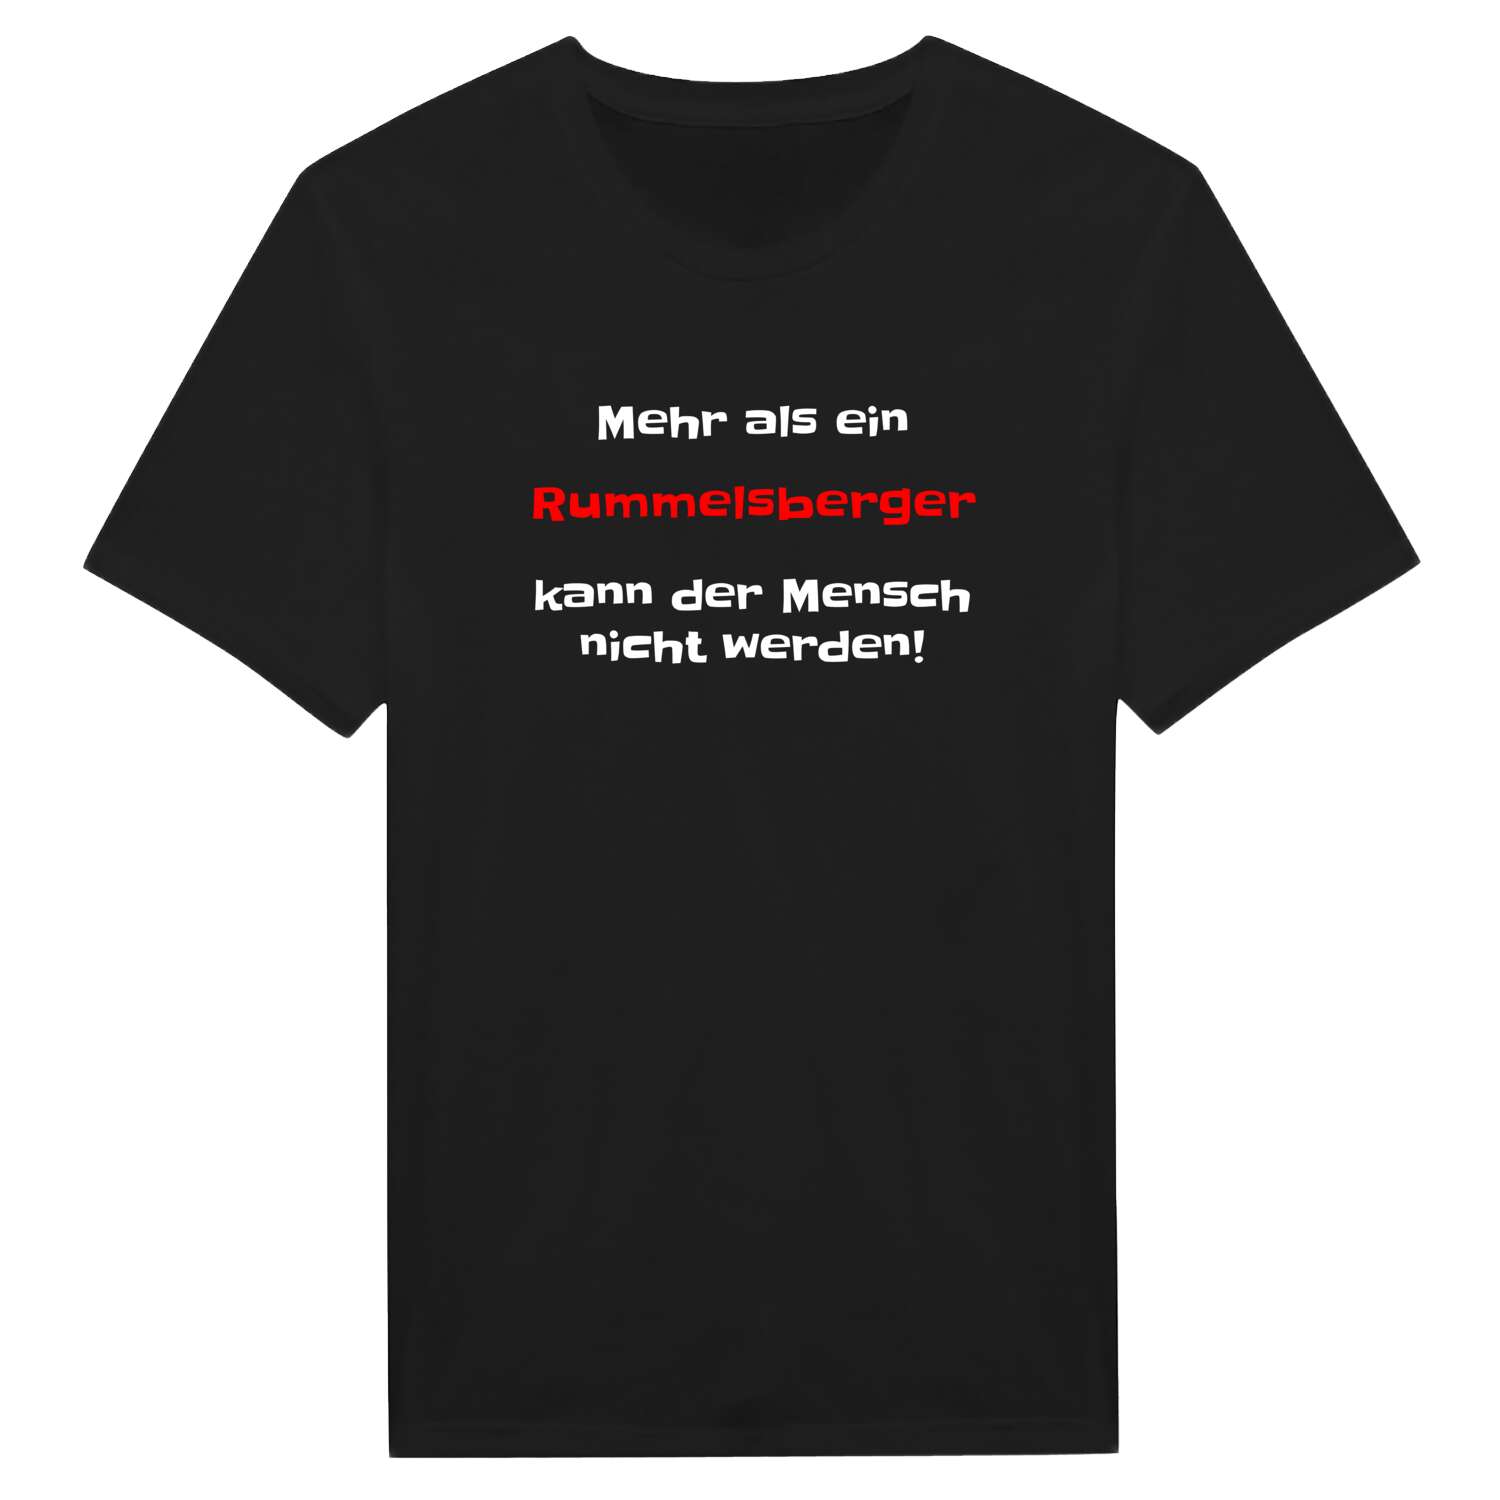 Rummelsberg T-Shirt »Mehr als ein«